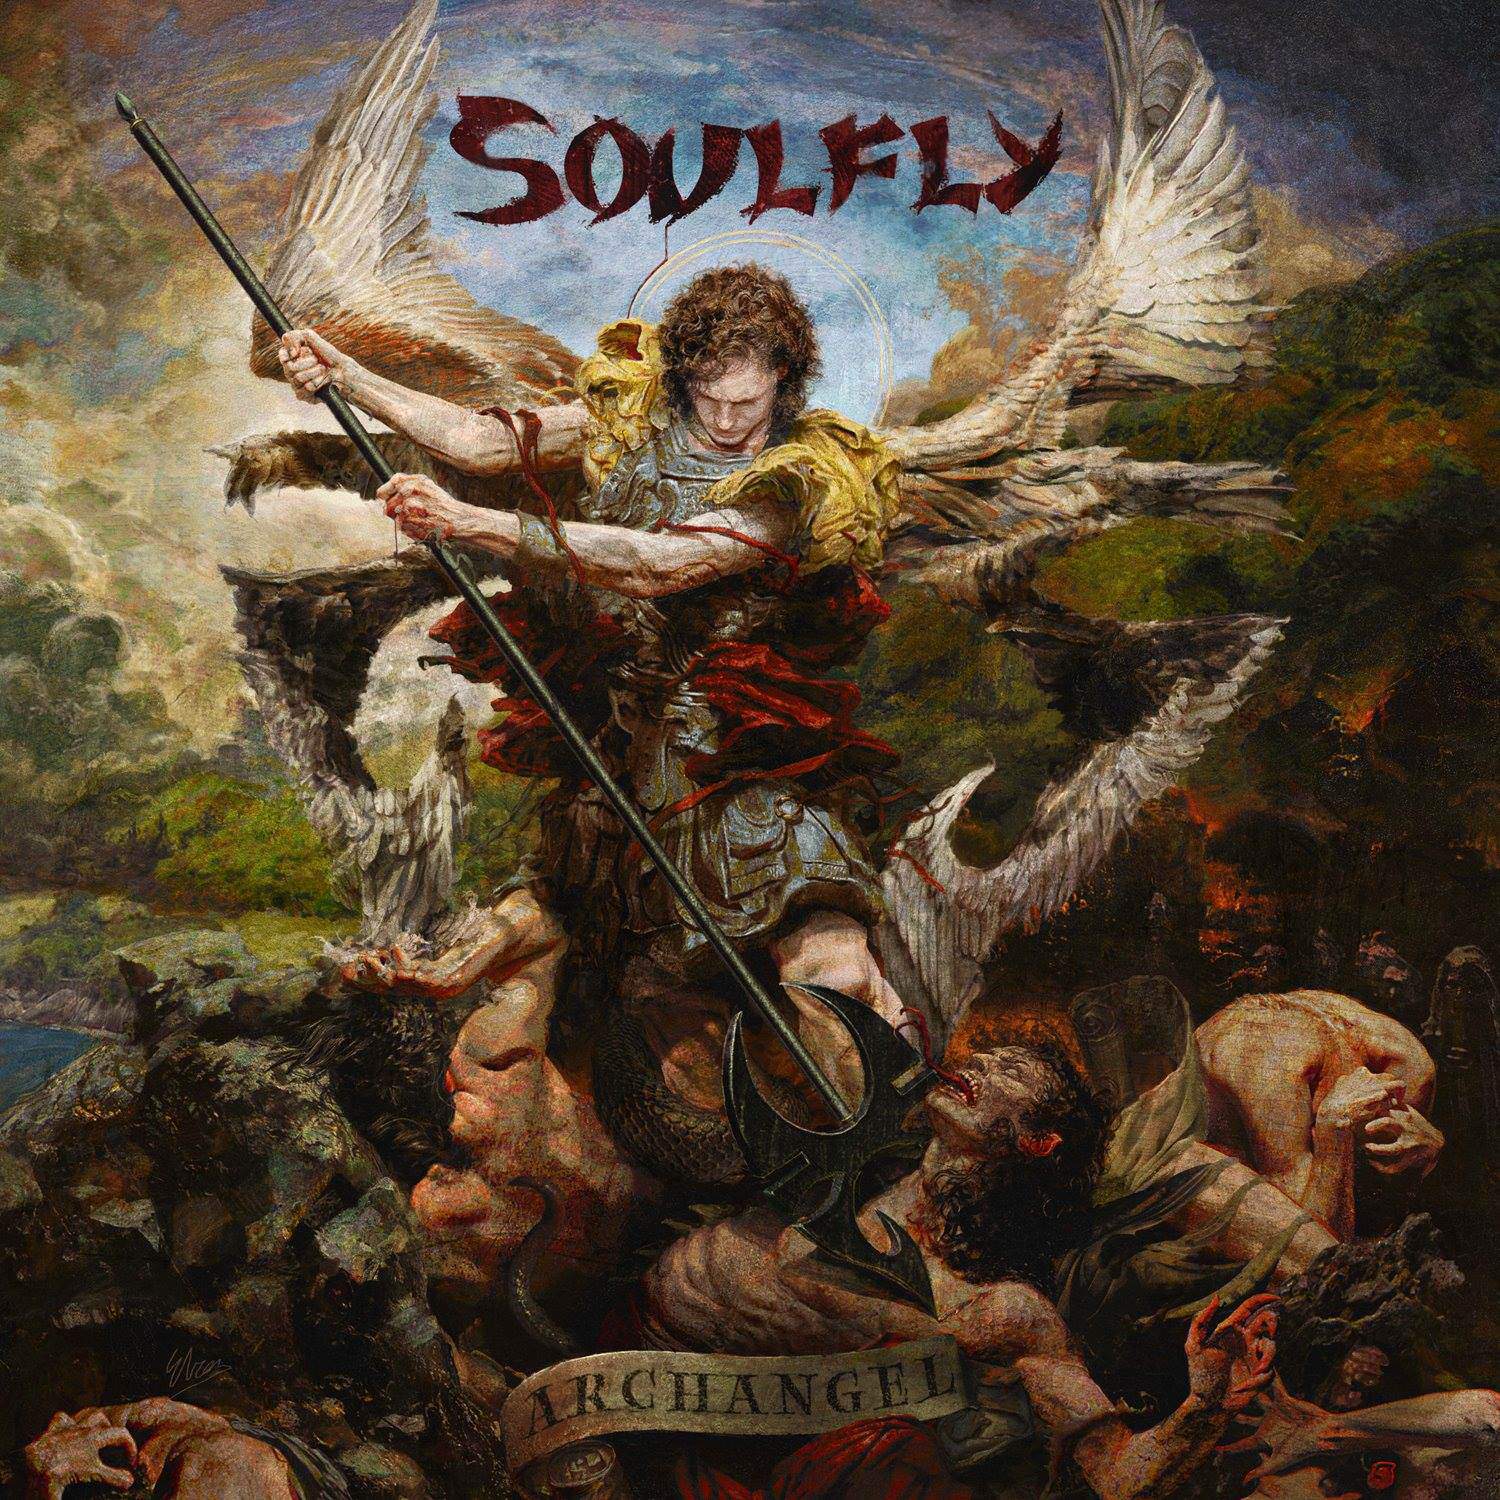 Soulfly-archangel-2015.jpg?fit=750%2C100